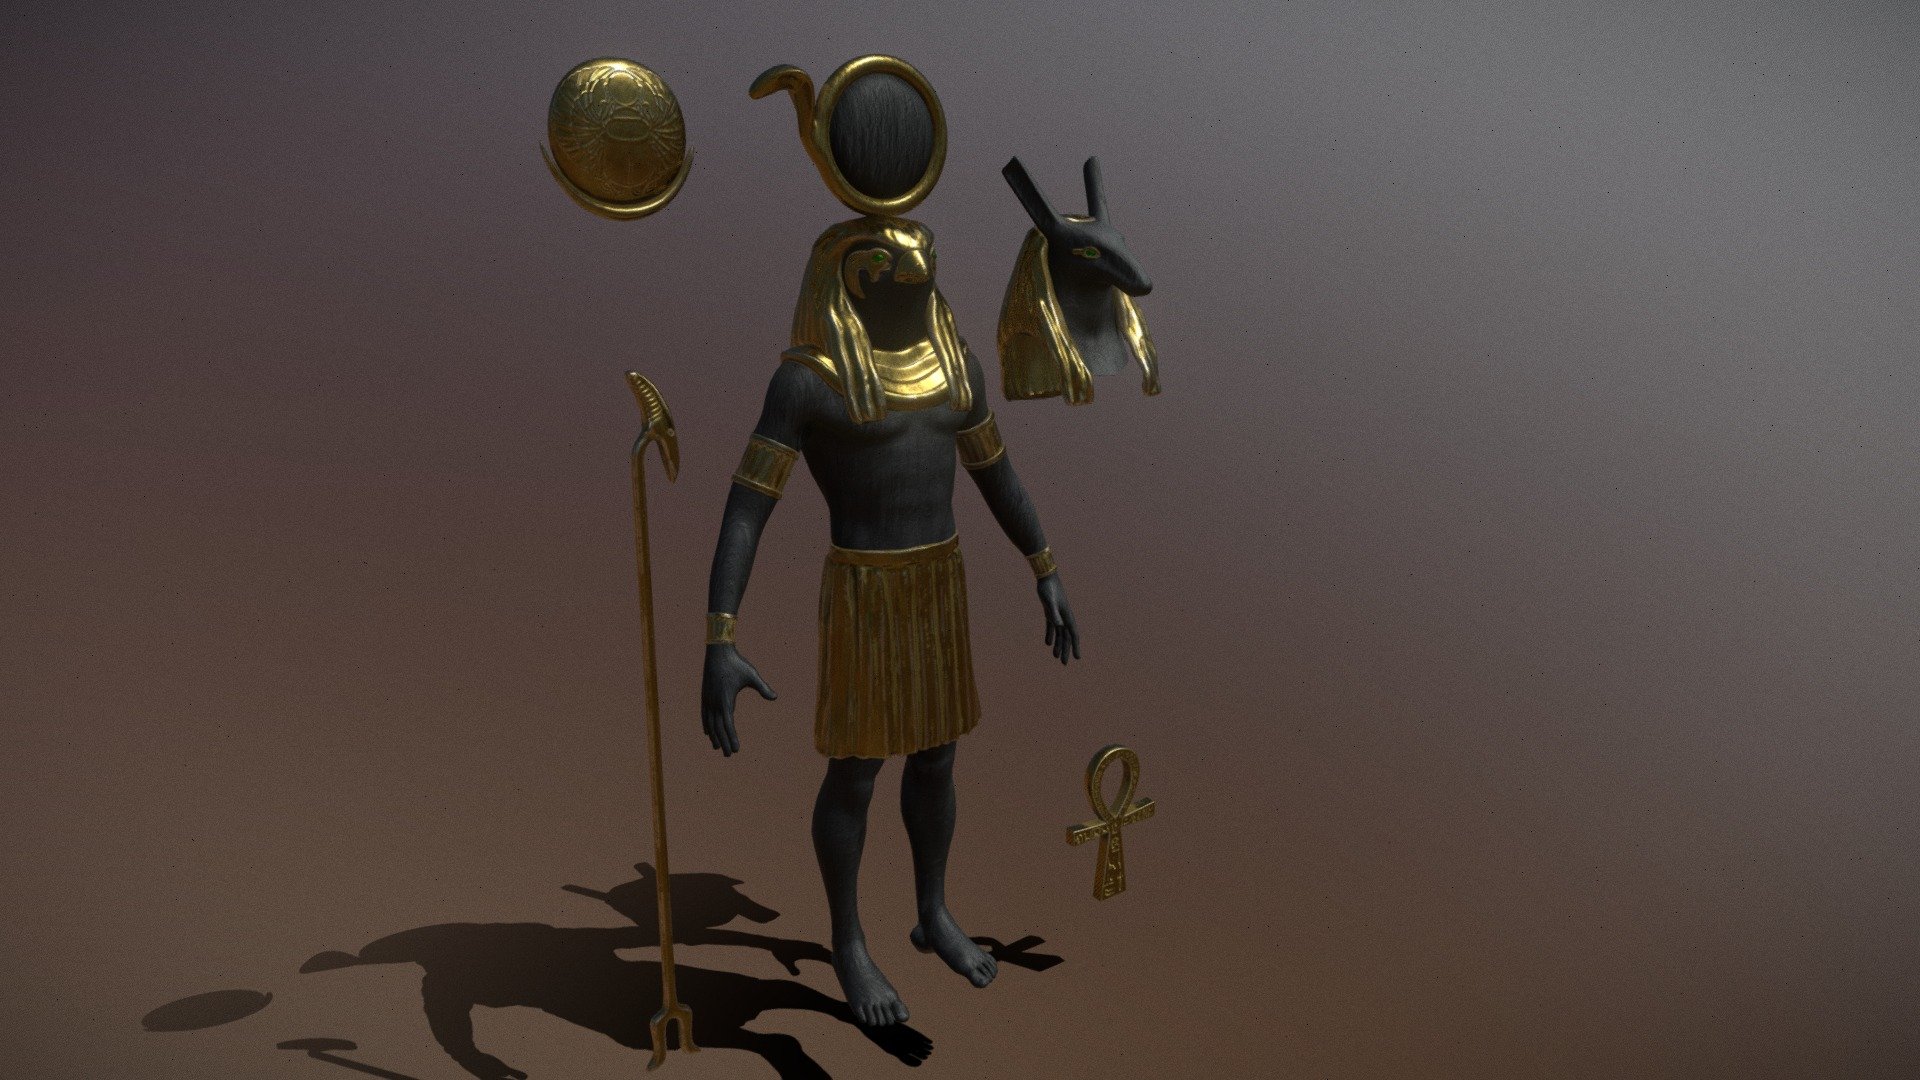 Statue Seth and Ra (Horus) - Statue Seth and Ra (Horus) - 3D model by Daniel 27 (@Daniel_27) 3d model